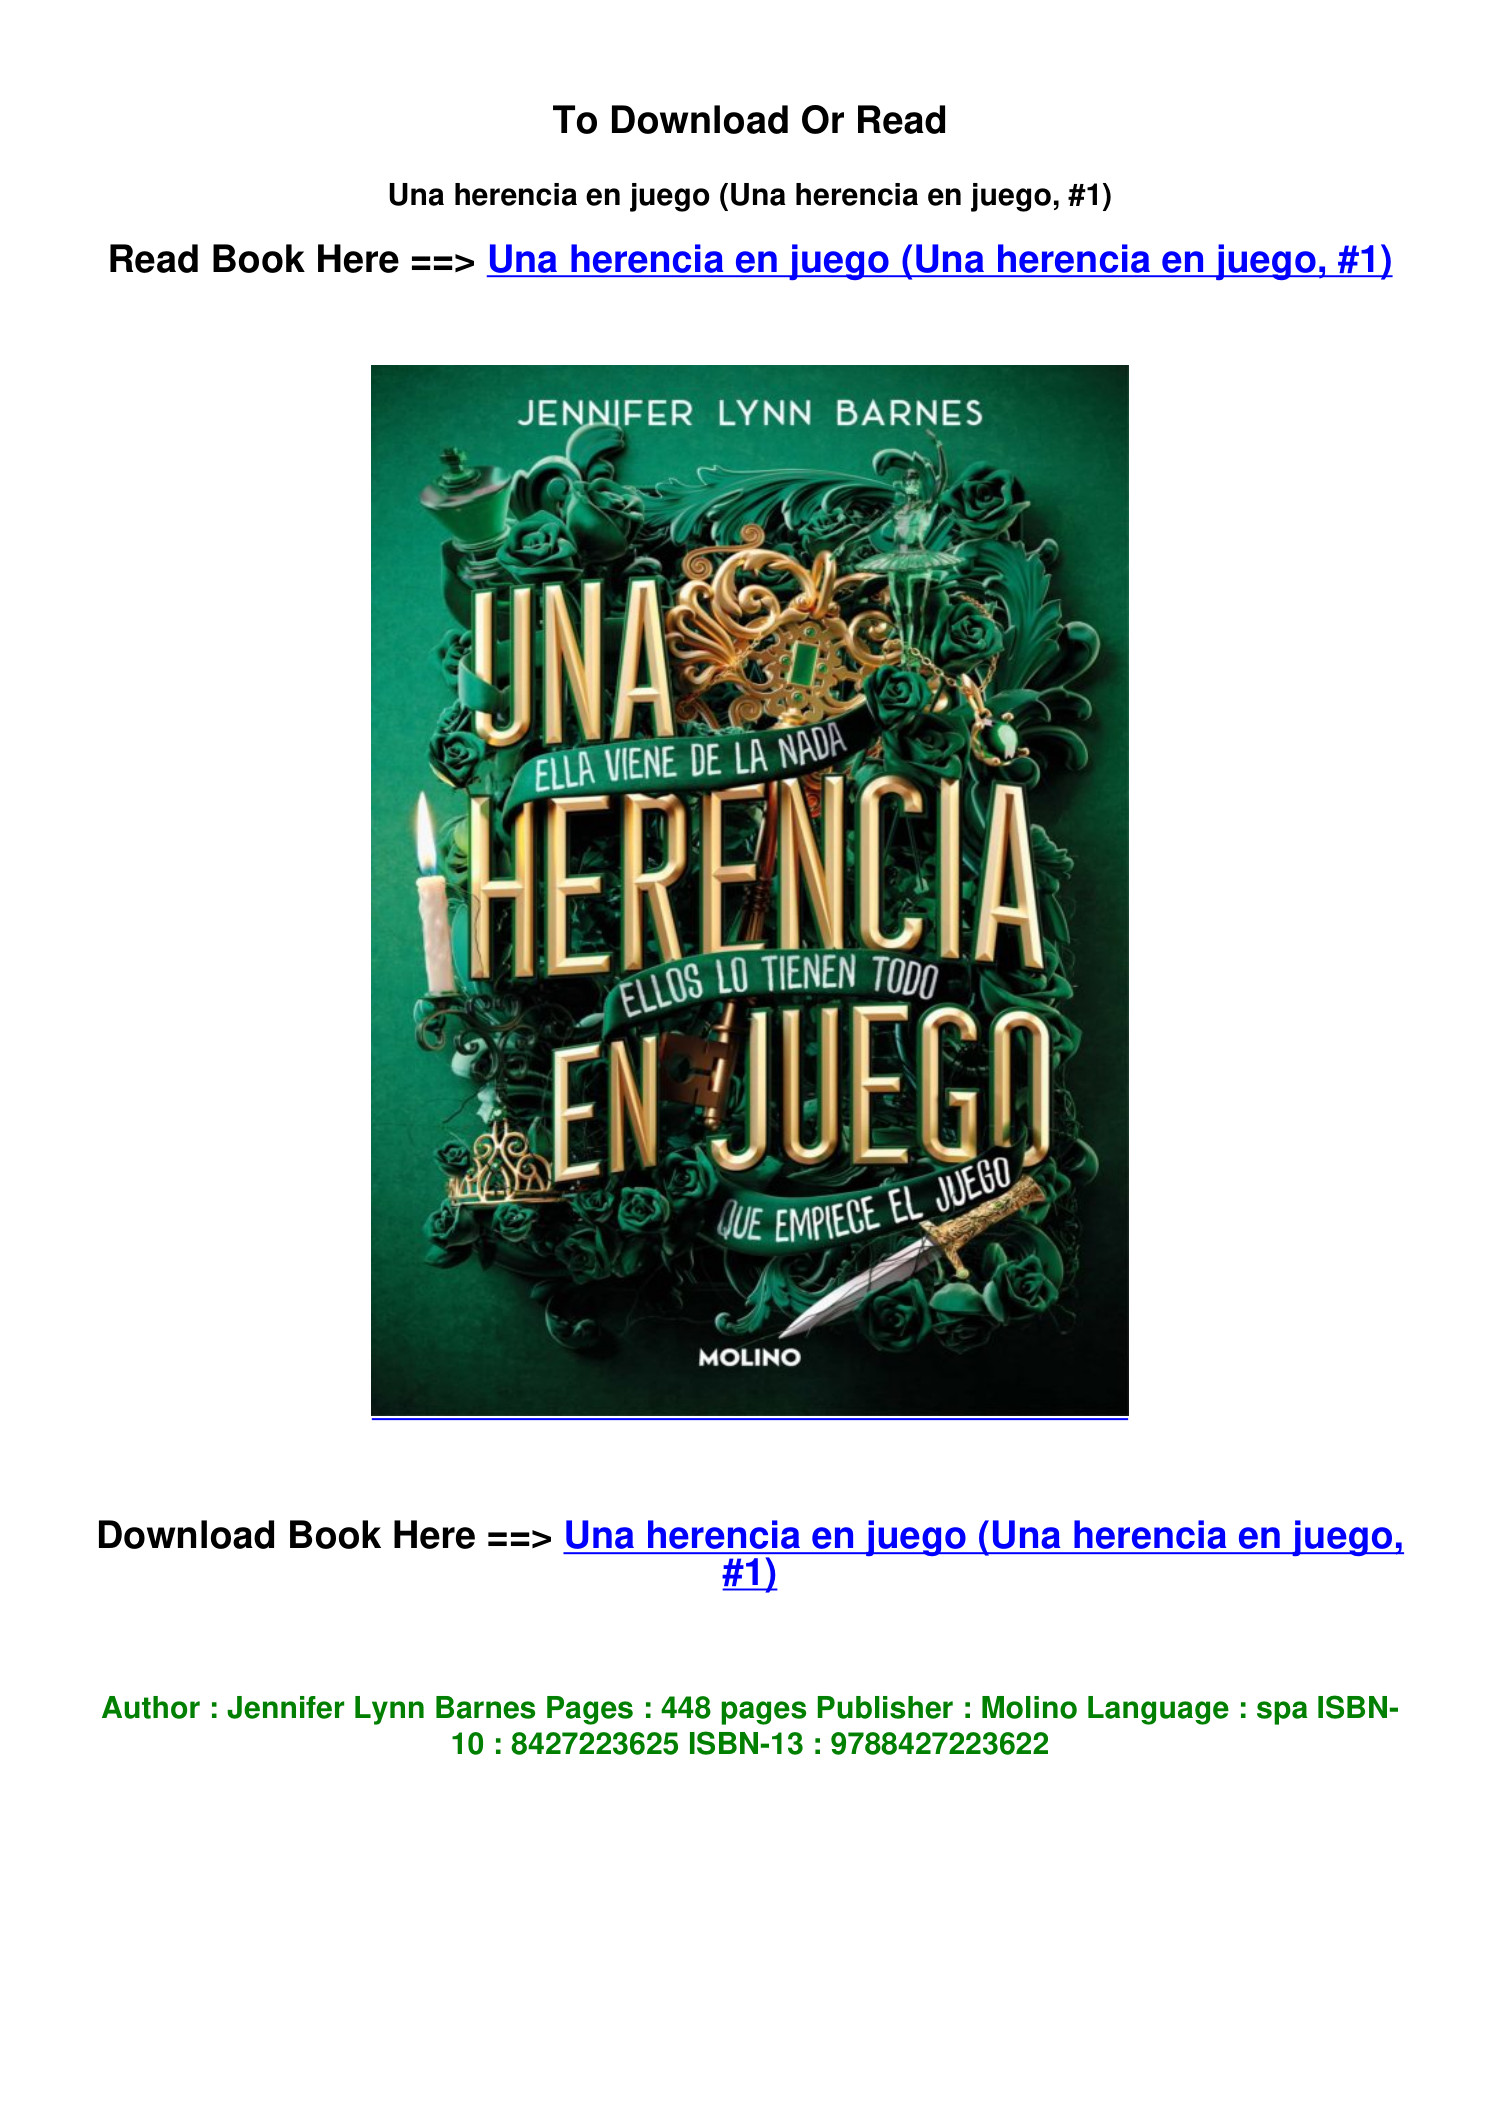 download PDF Una herencia en juego Una herencia en juego 1 by